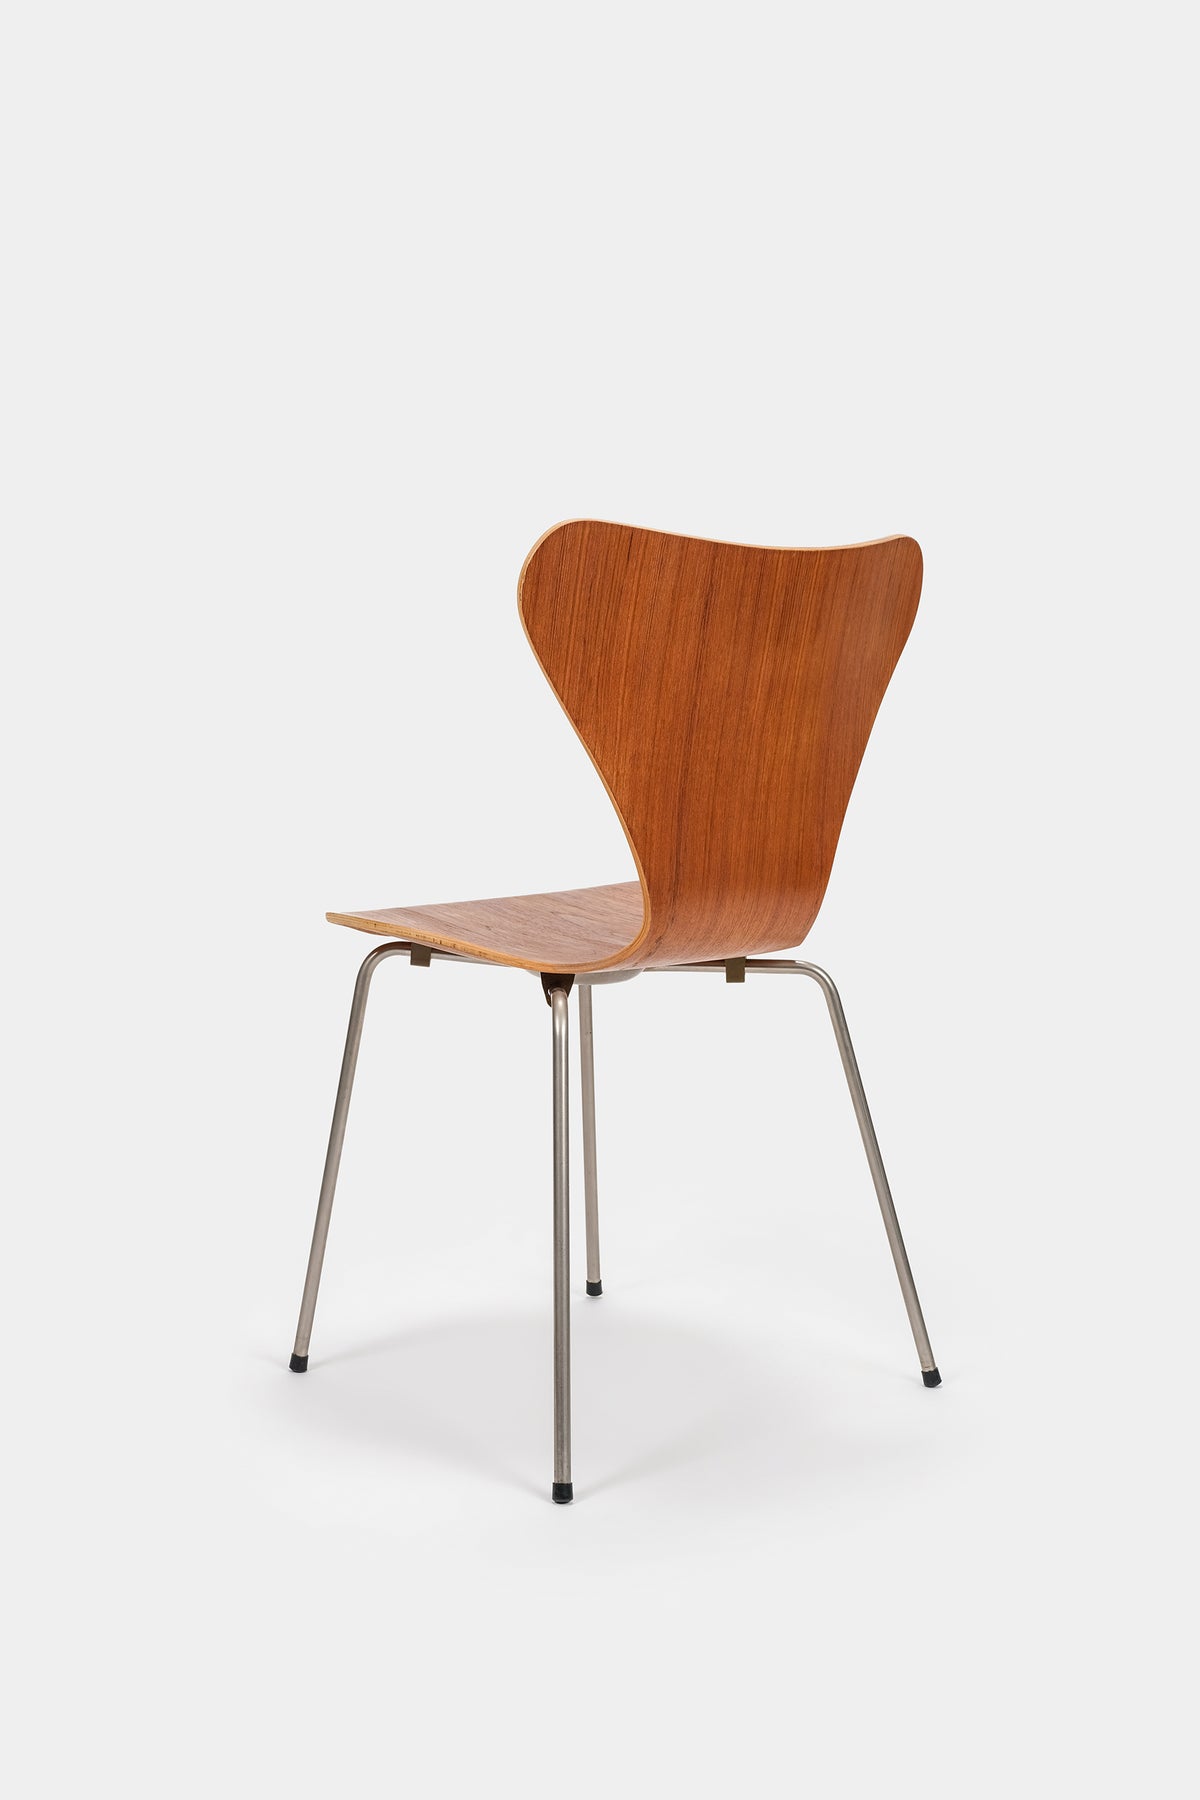 Arne Jacobsen, Teak Chair 3107, Fritz Hansen, Denmark, 50s